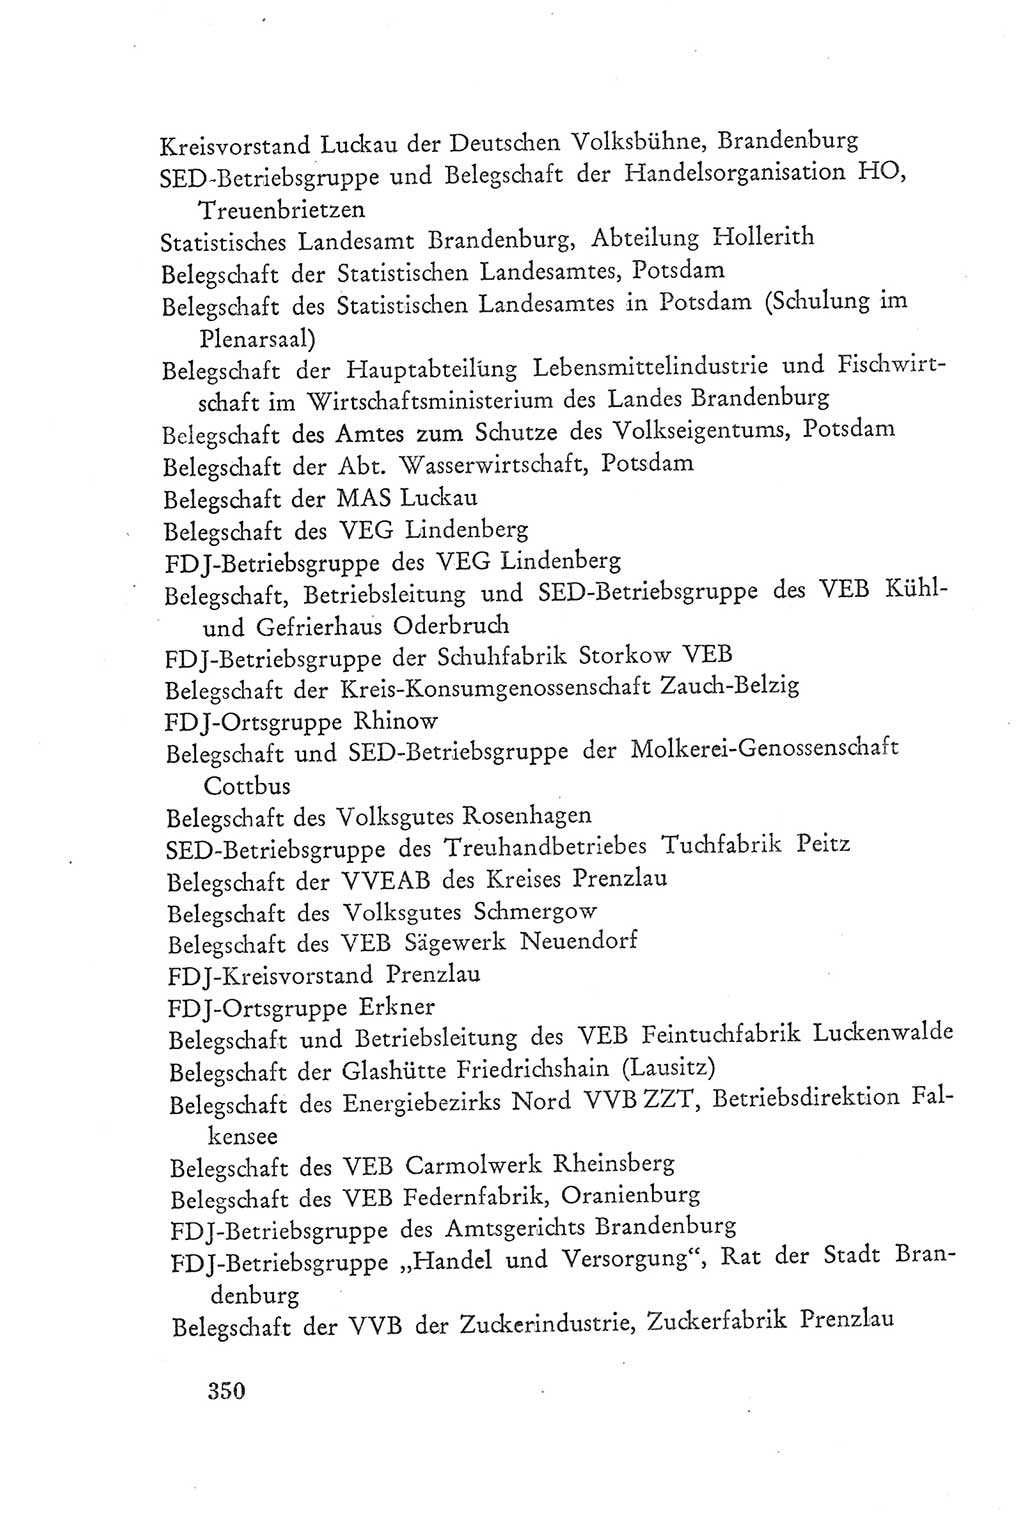 Protokoll der Verhandlungen des Ⅲ. Parteitages der Sozialistischen Einheitspartei Deutschlands (SED) [Deutsche Demokratische Republik (DDR)] 1950, Band 2, Seite 350 (Prot. Verh. Ⅲ. PT SED DDR 1950, Bd. 2, S. 350)